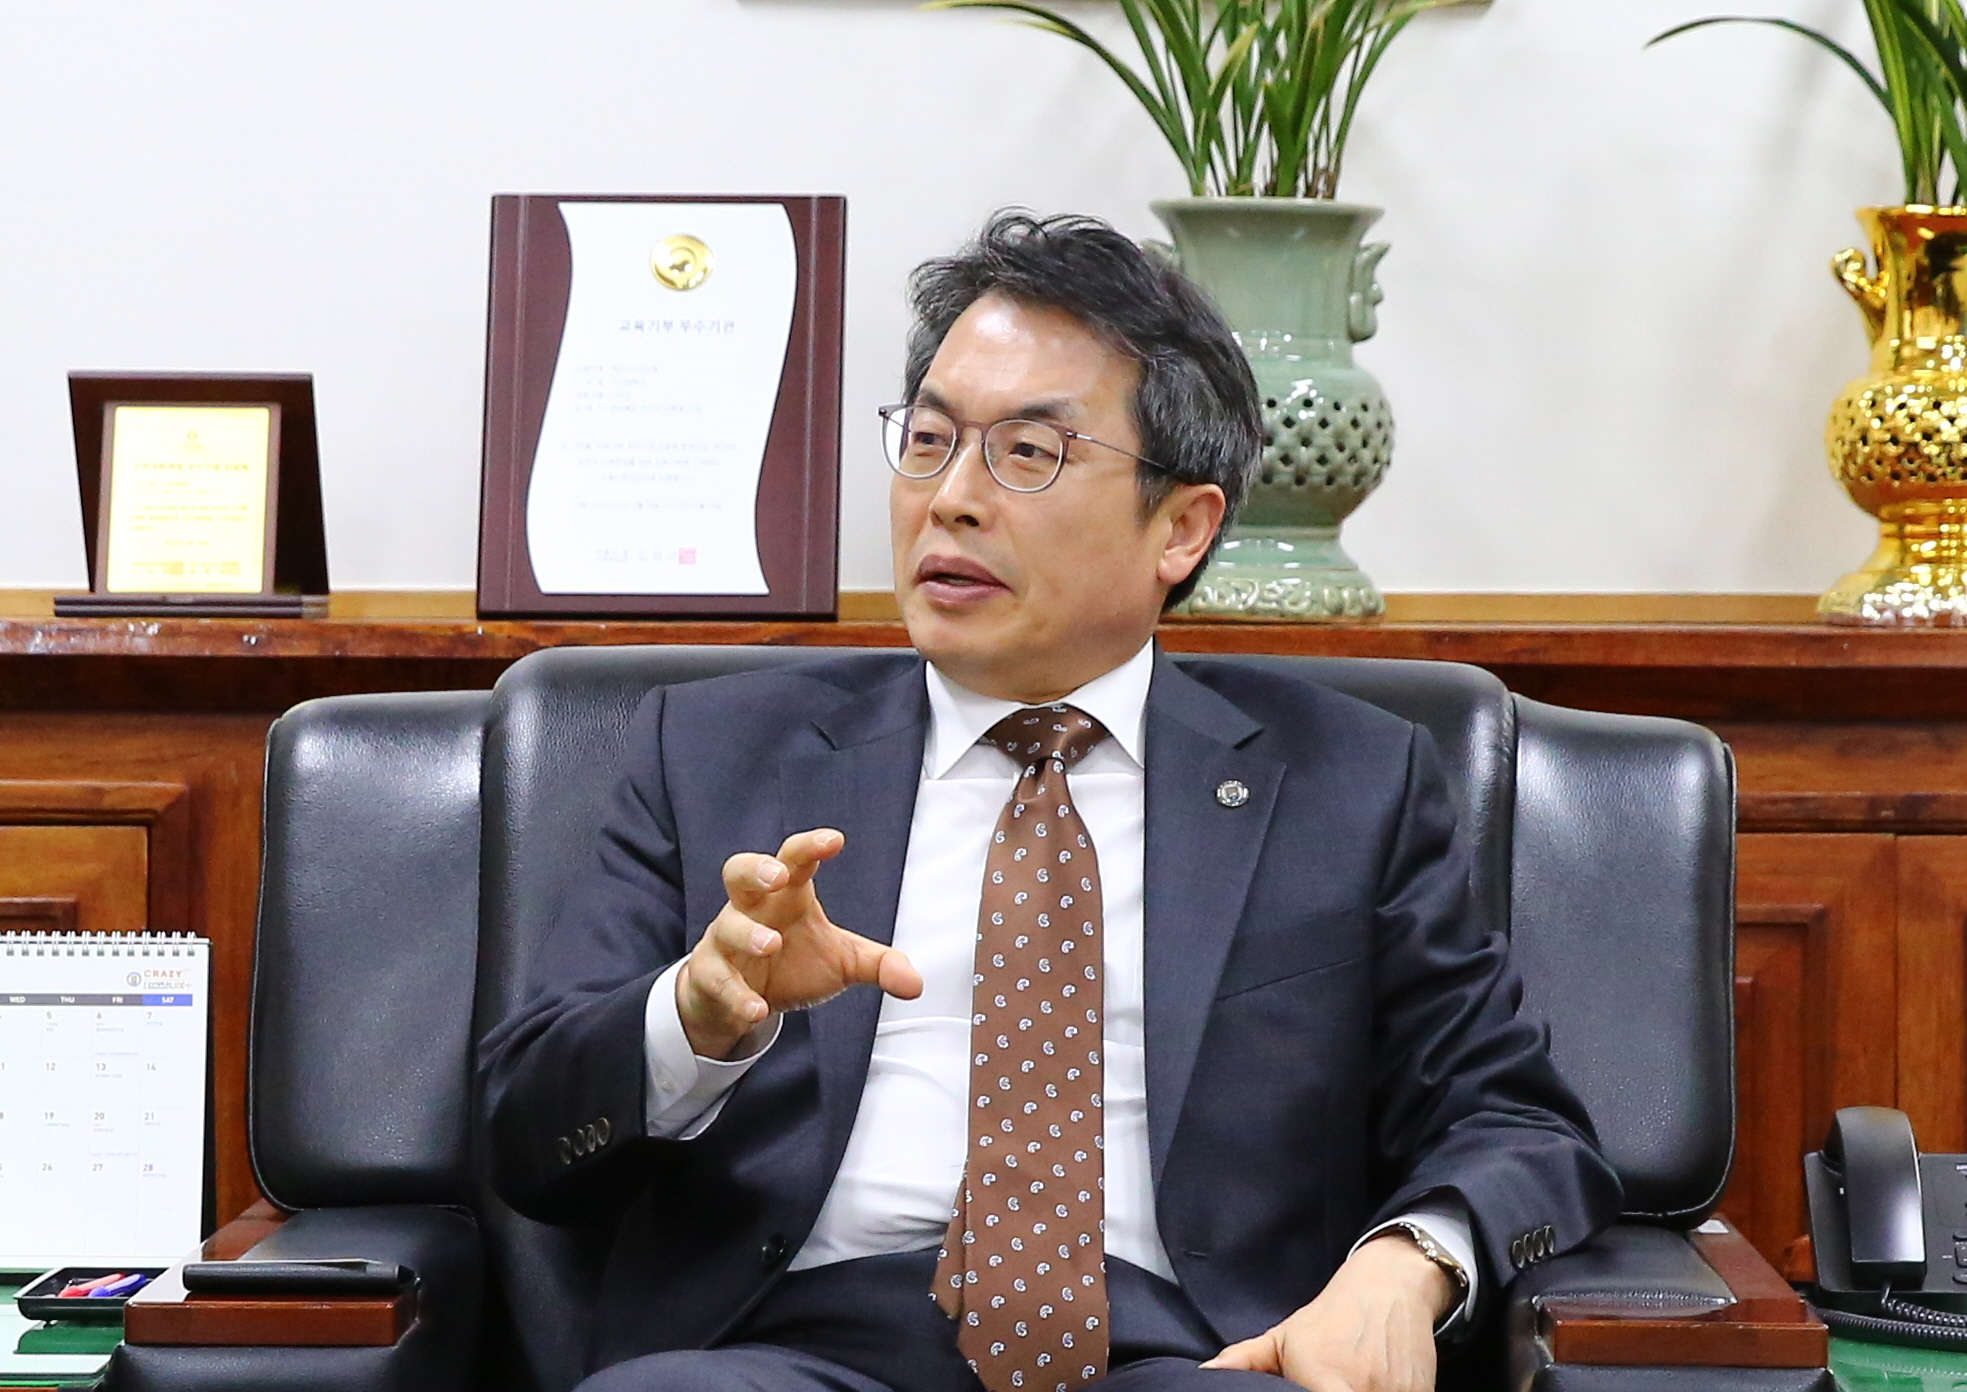 곽병선 군산대 총장이 4차 산업혁명시대를 맞아 군산대학교의 발전 방향에 대해 이야기하고 있다.